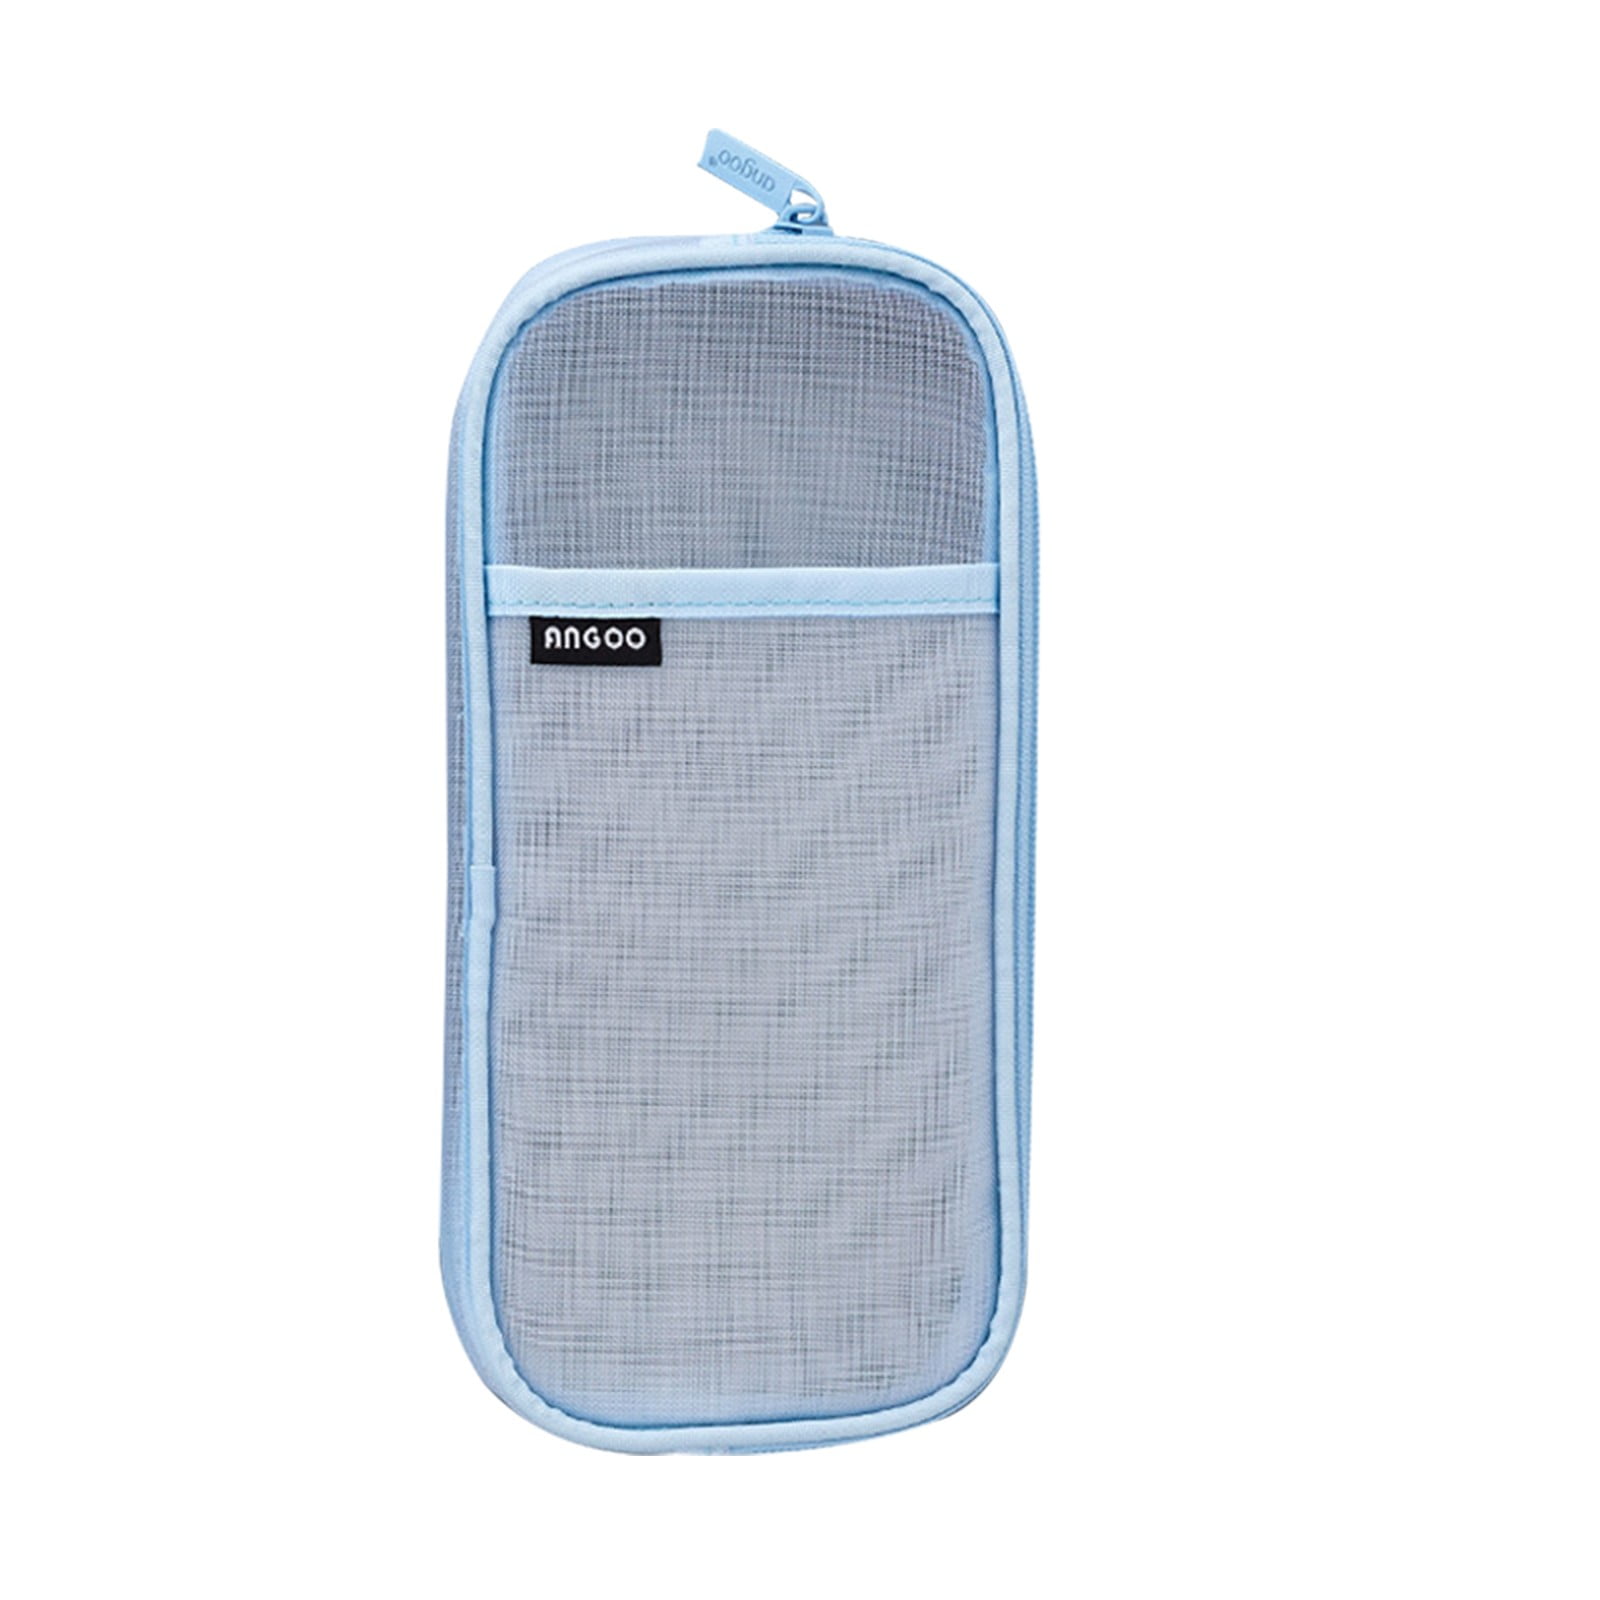 Clear pencil case, transparent zipper pouch @ Mailis Design